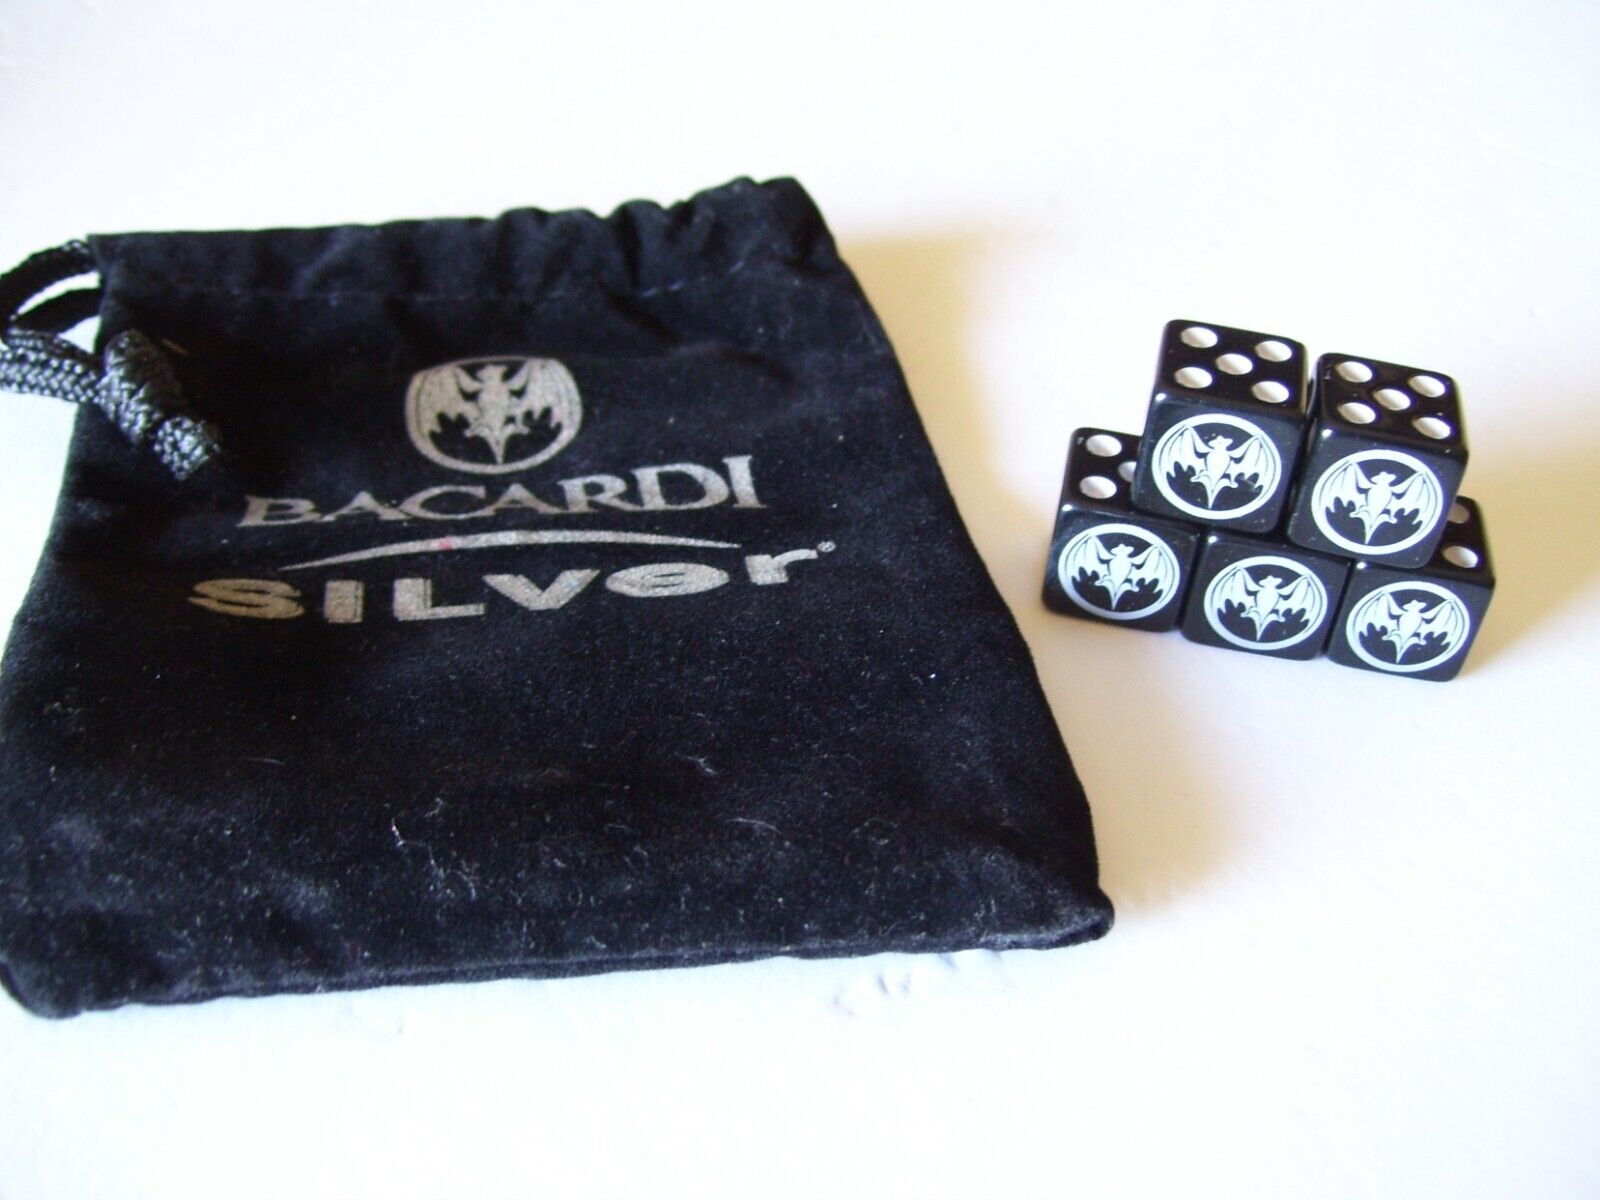 Bacardi Silver Bat Logo 5-piece Dice Set with Logo Dice Bag Promo Give away